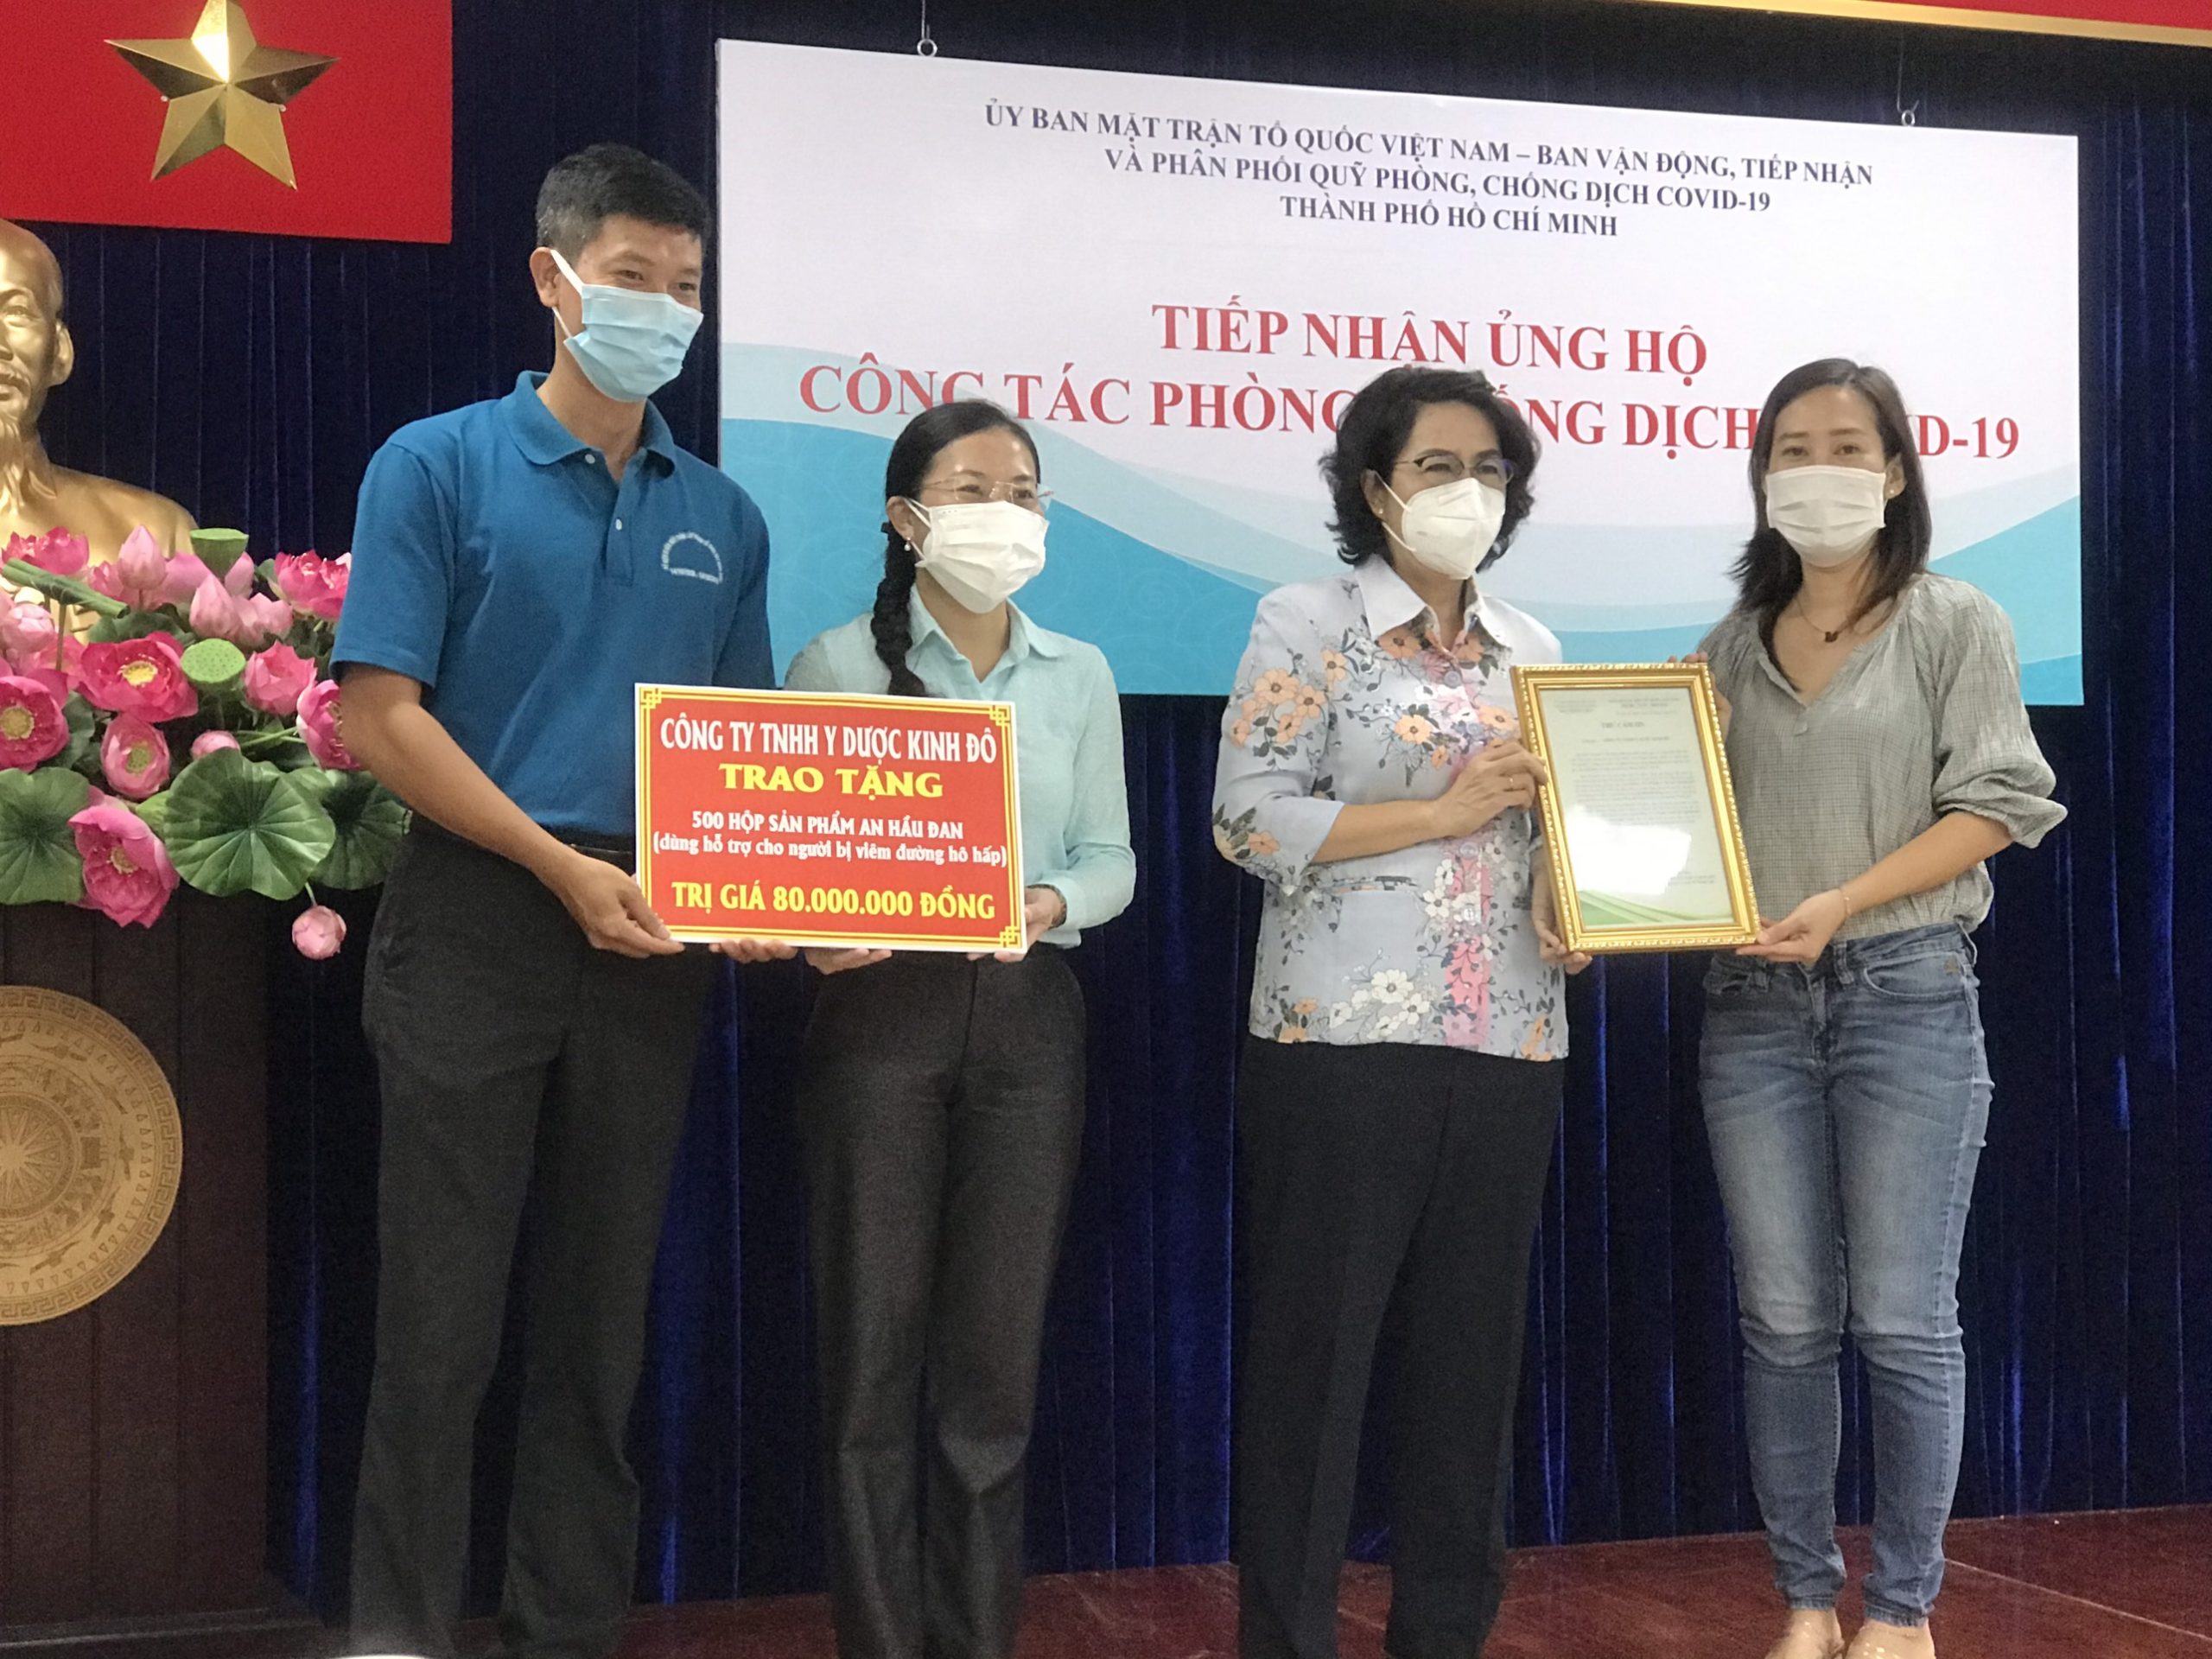 Công ty Y Dược Kinh Đô tài trợ An Hầu Đan cho các gia đình có người mắc viêm đường hô hấp tại TP Hồ Chí Minh